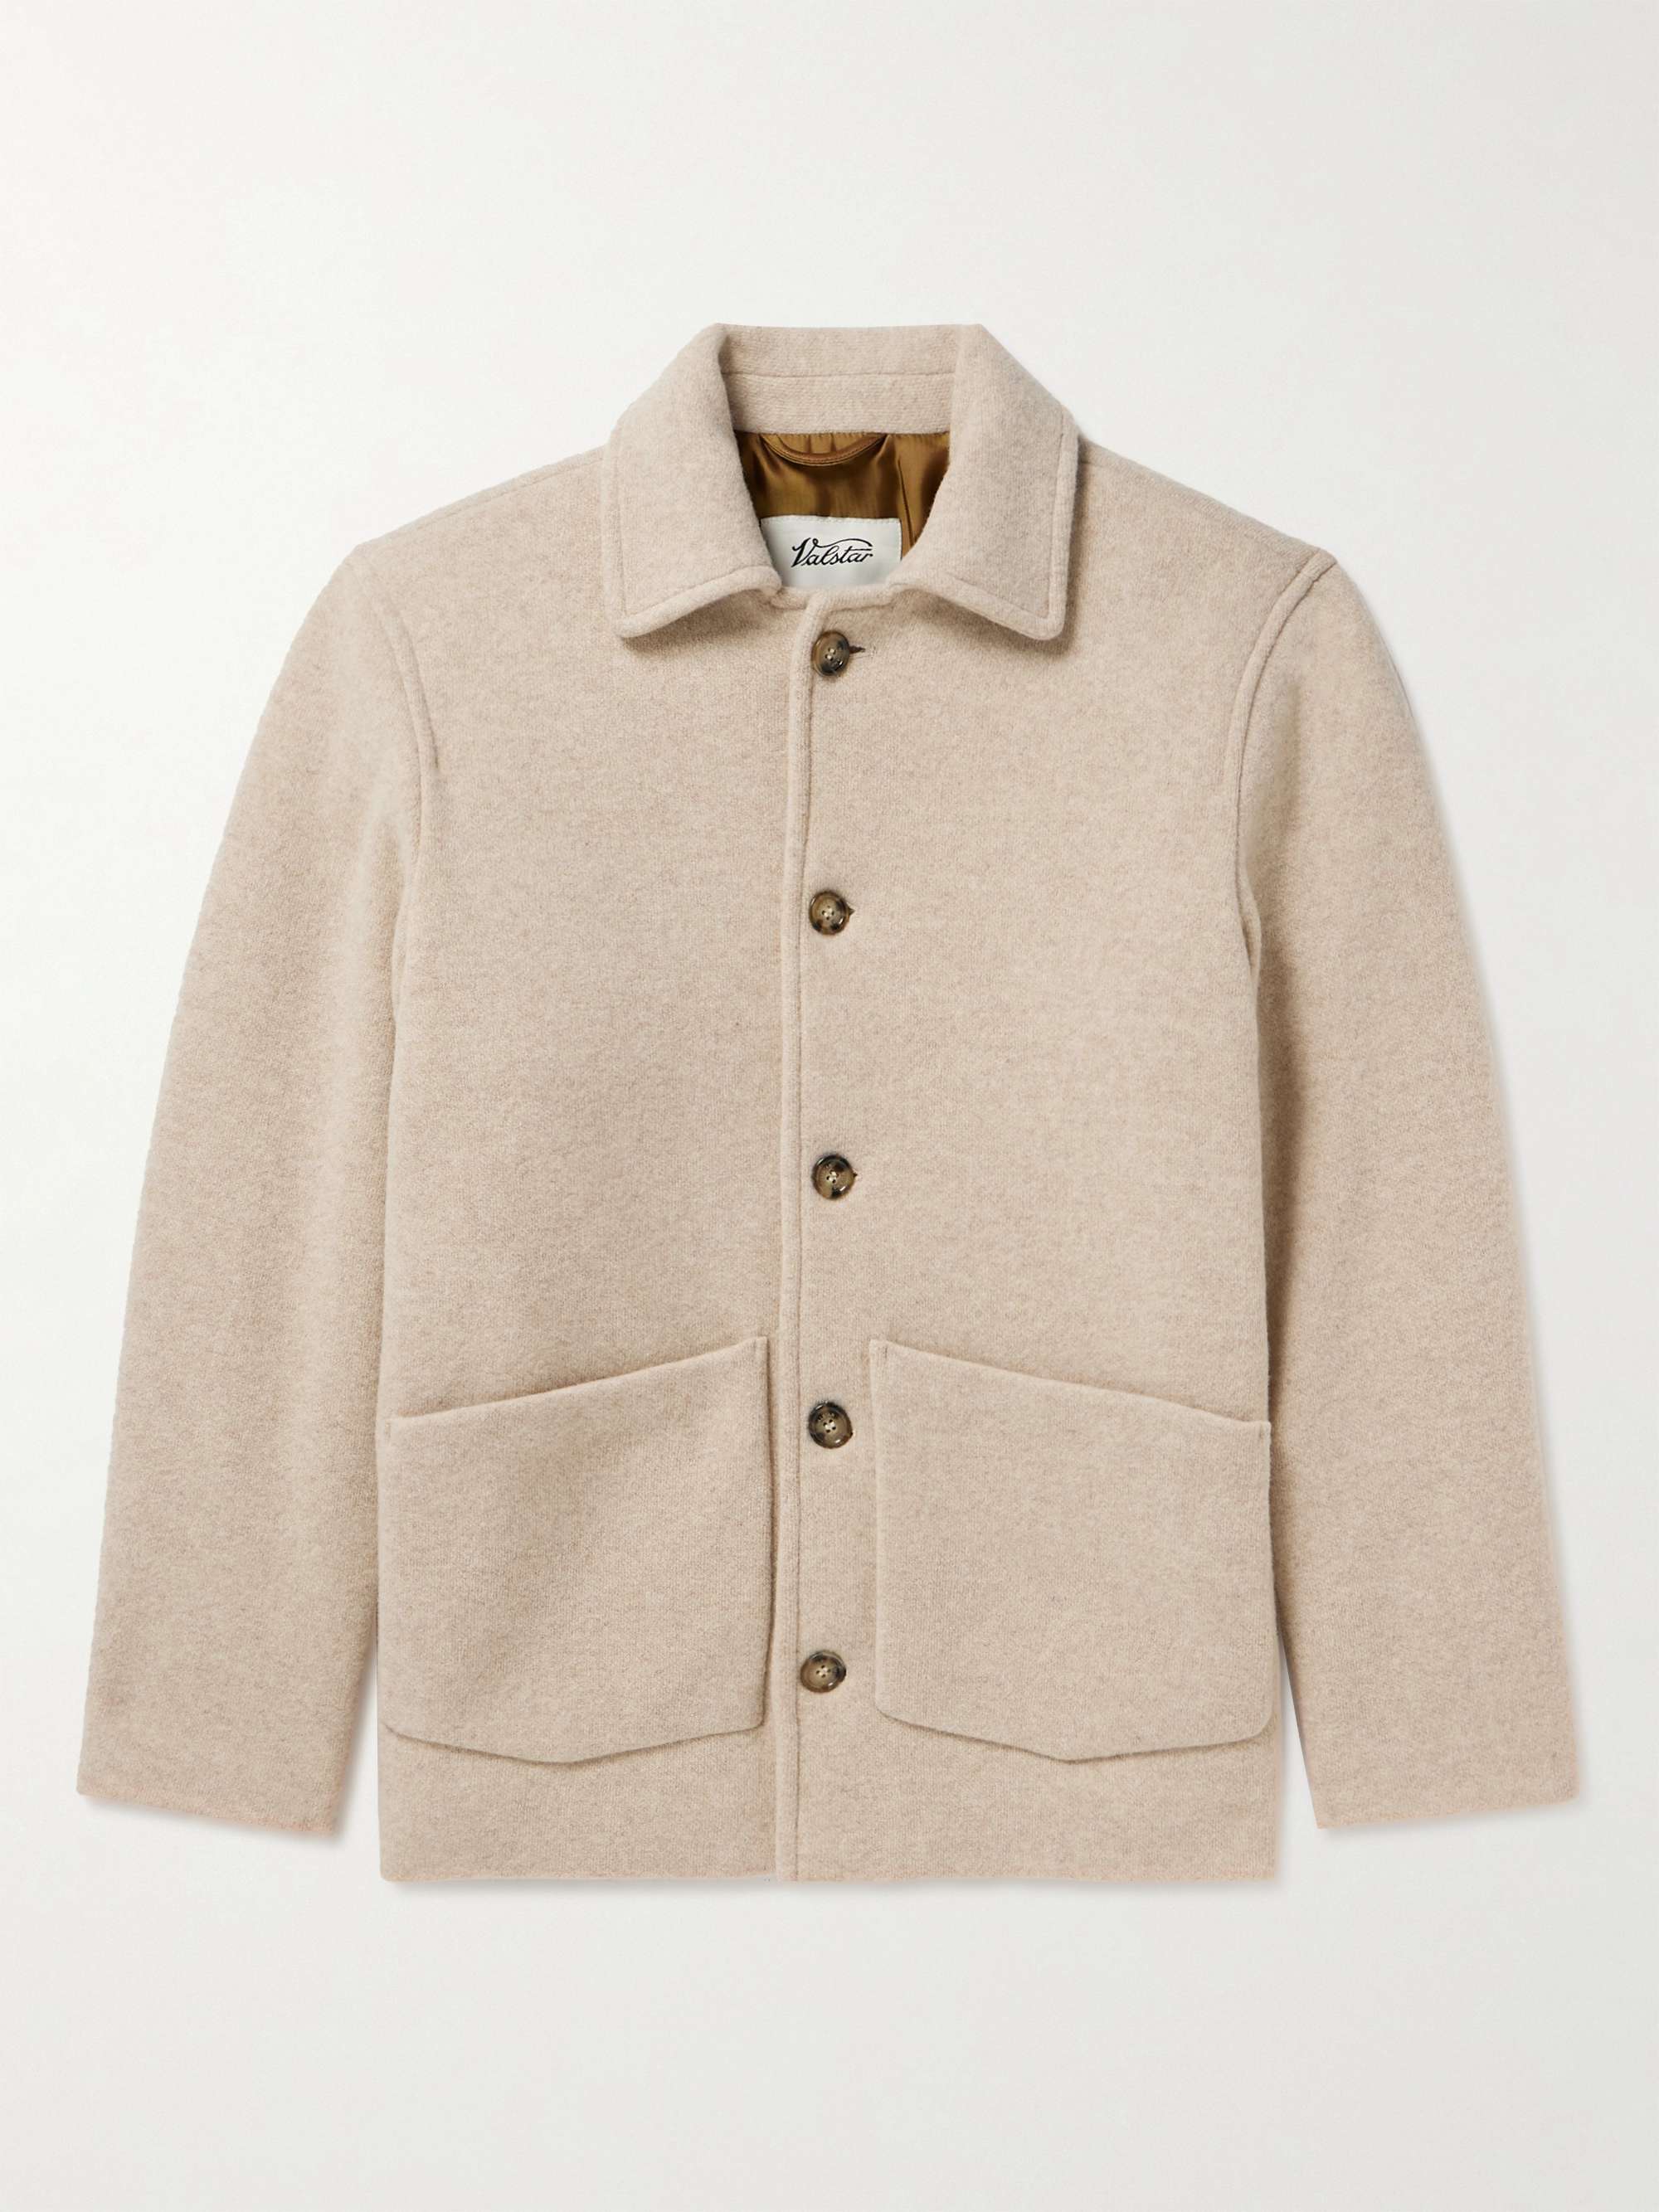 VALSTAR Wool and Cashmere-Blend Chore Jacket for Men | MR PORTER